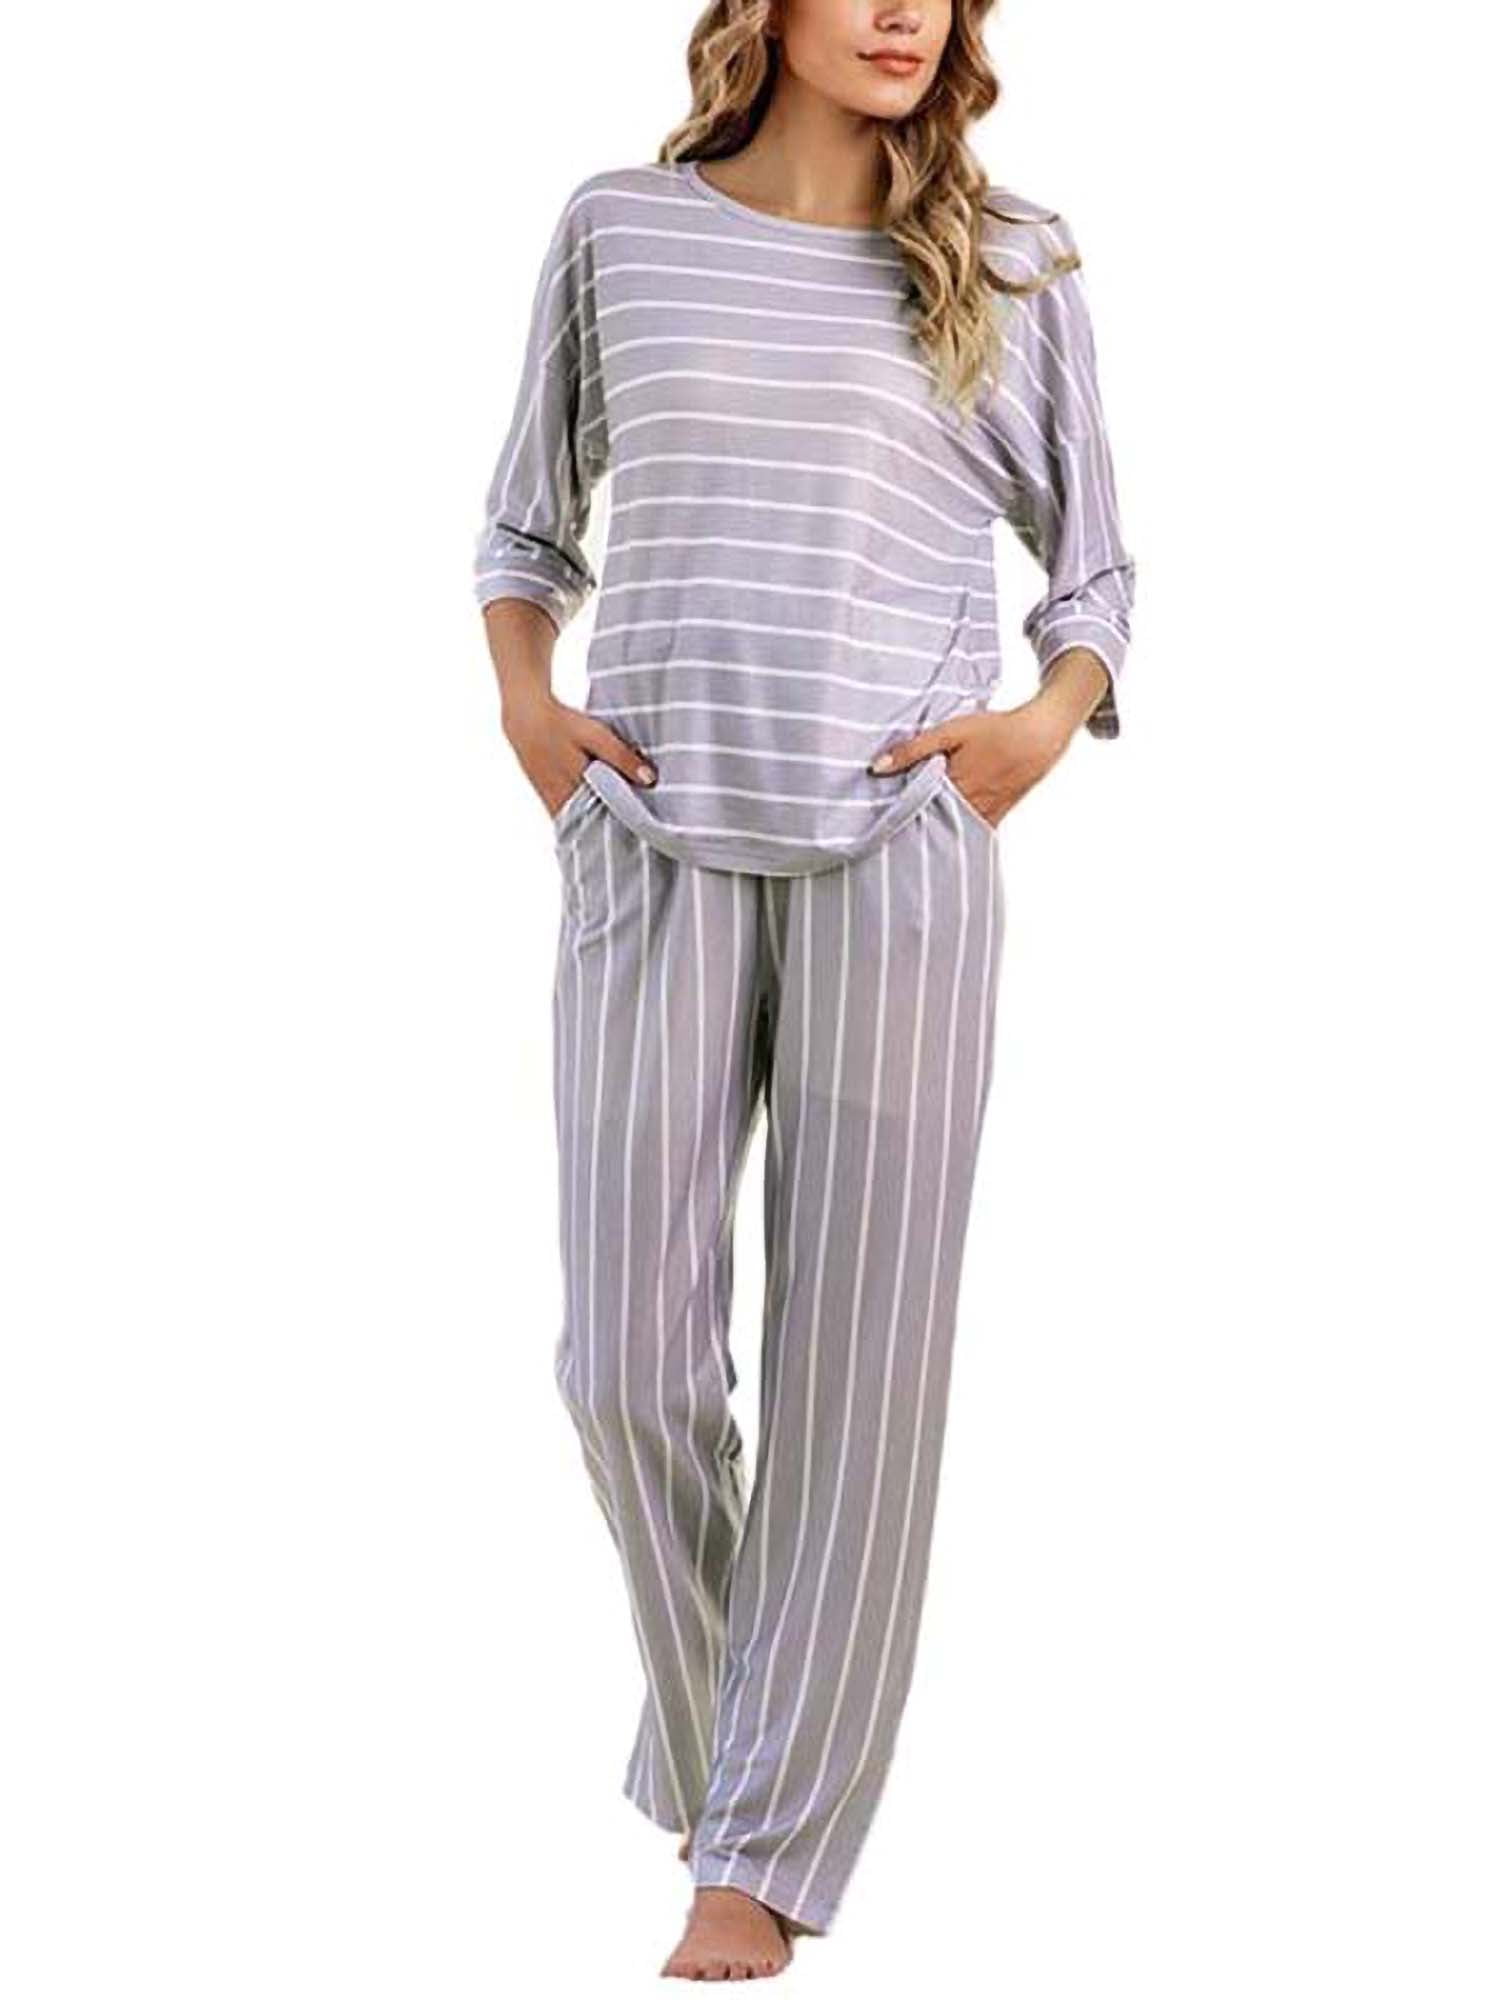 New Women Long Sleeve Cotton Pajamas Set Sleepwear Nightwear Loungewear Homewear